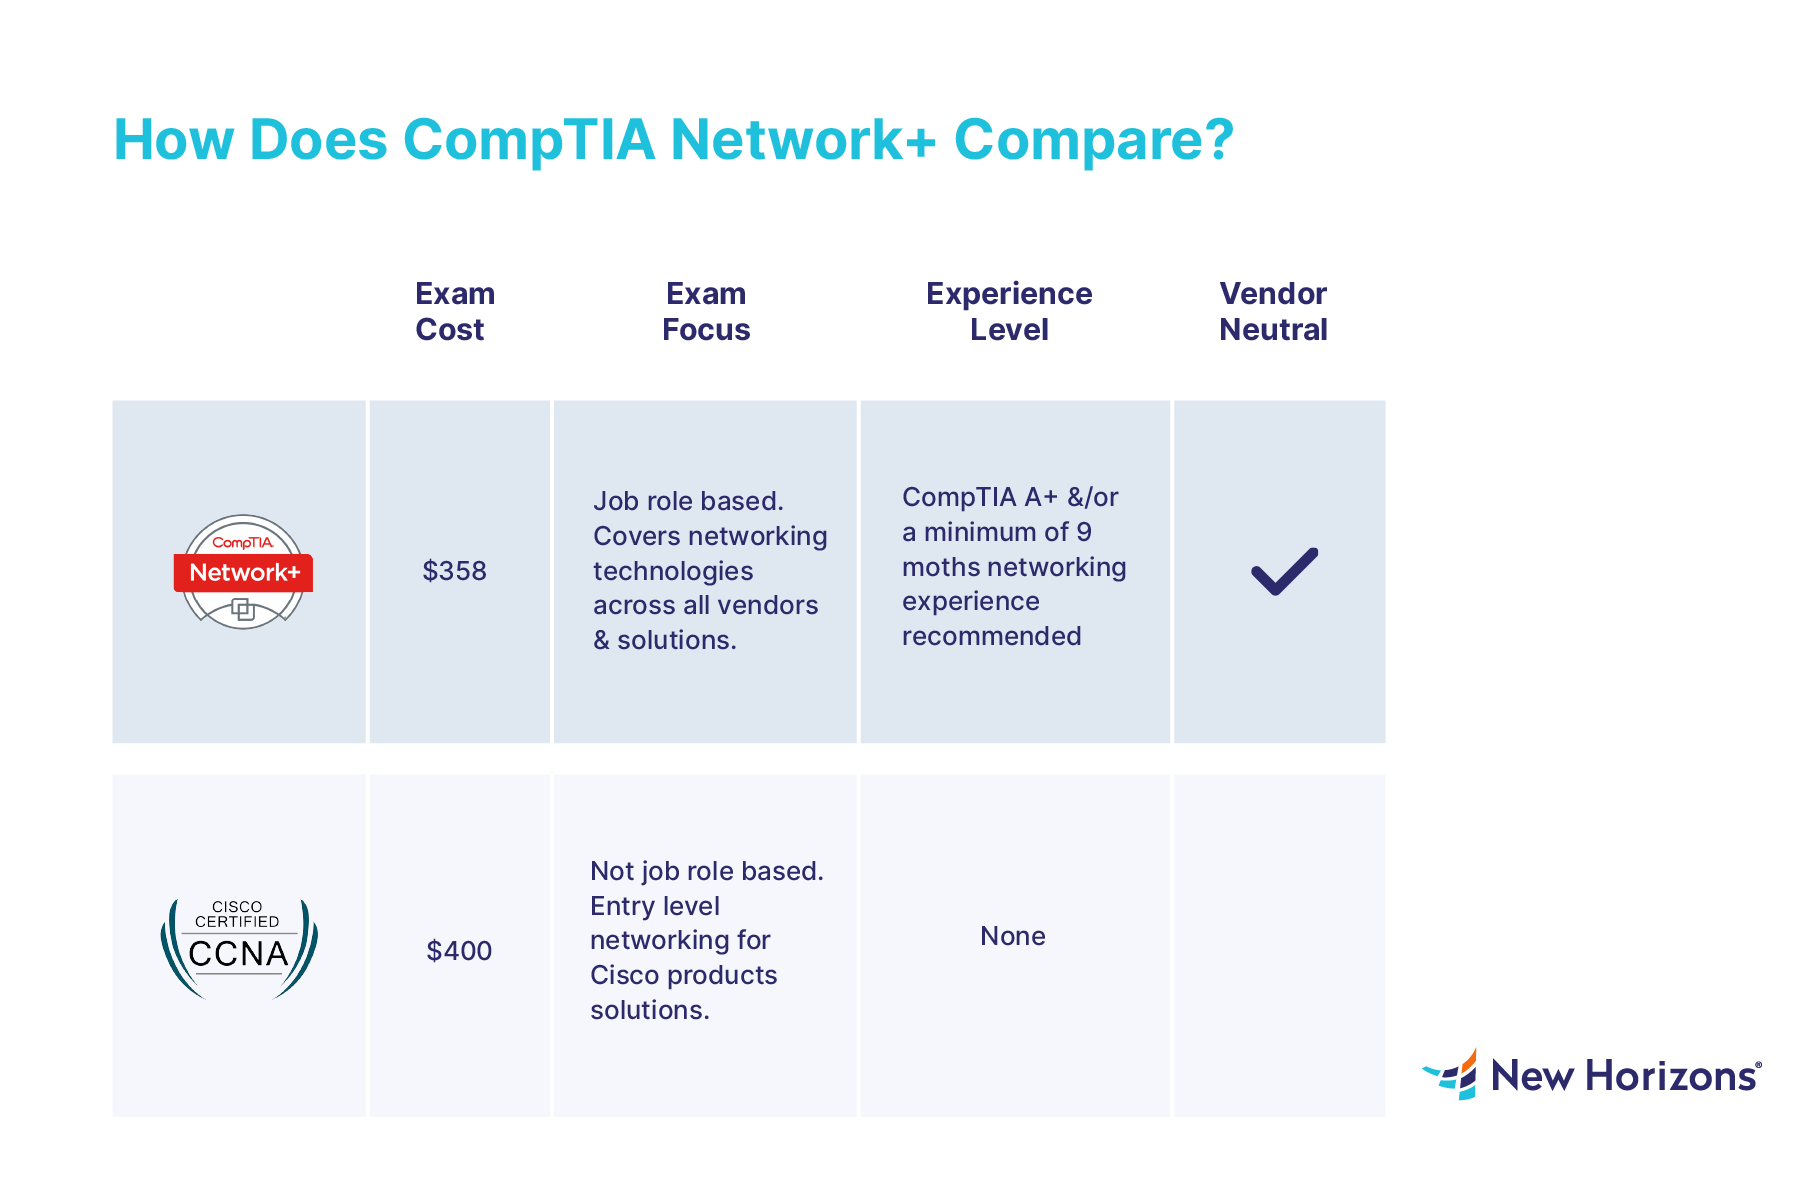 CompTIA Network+ vs CCNA